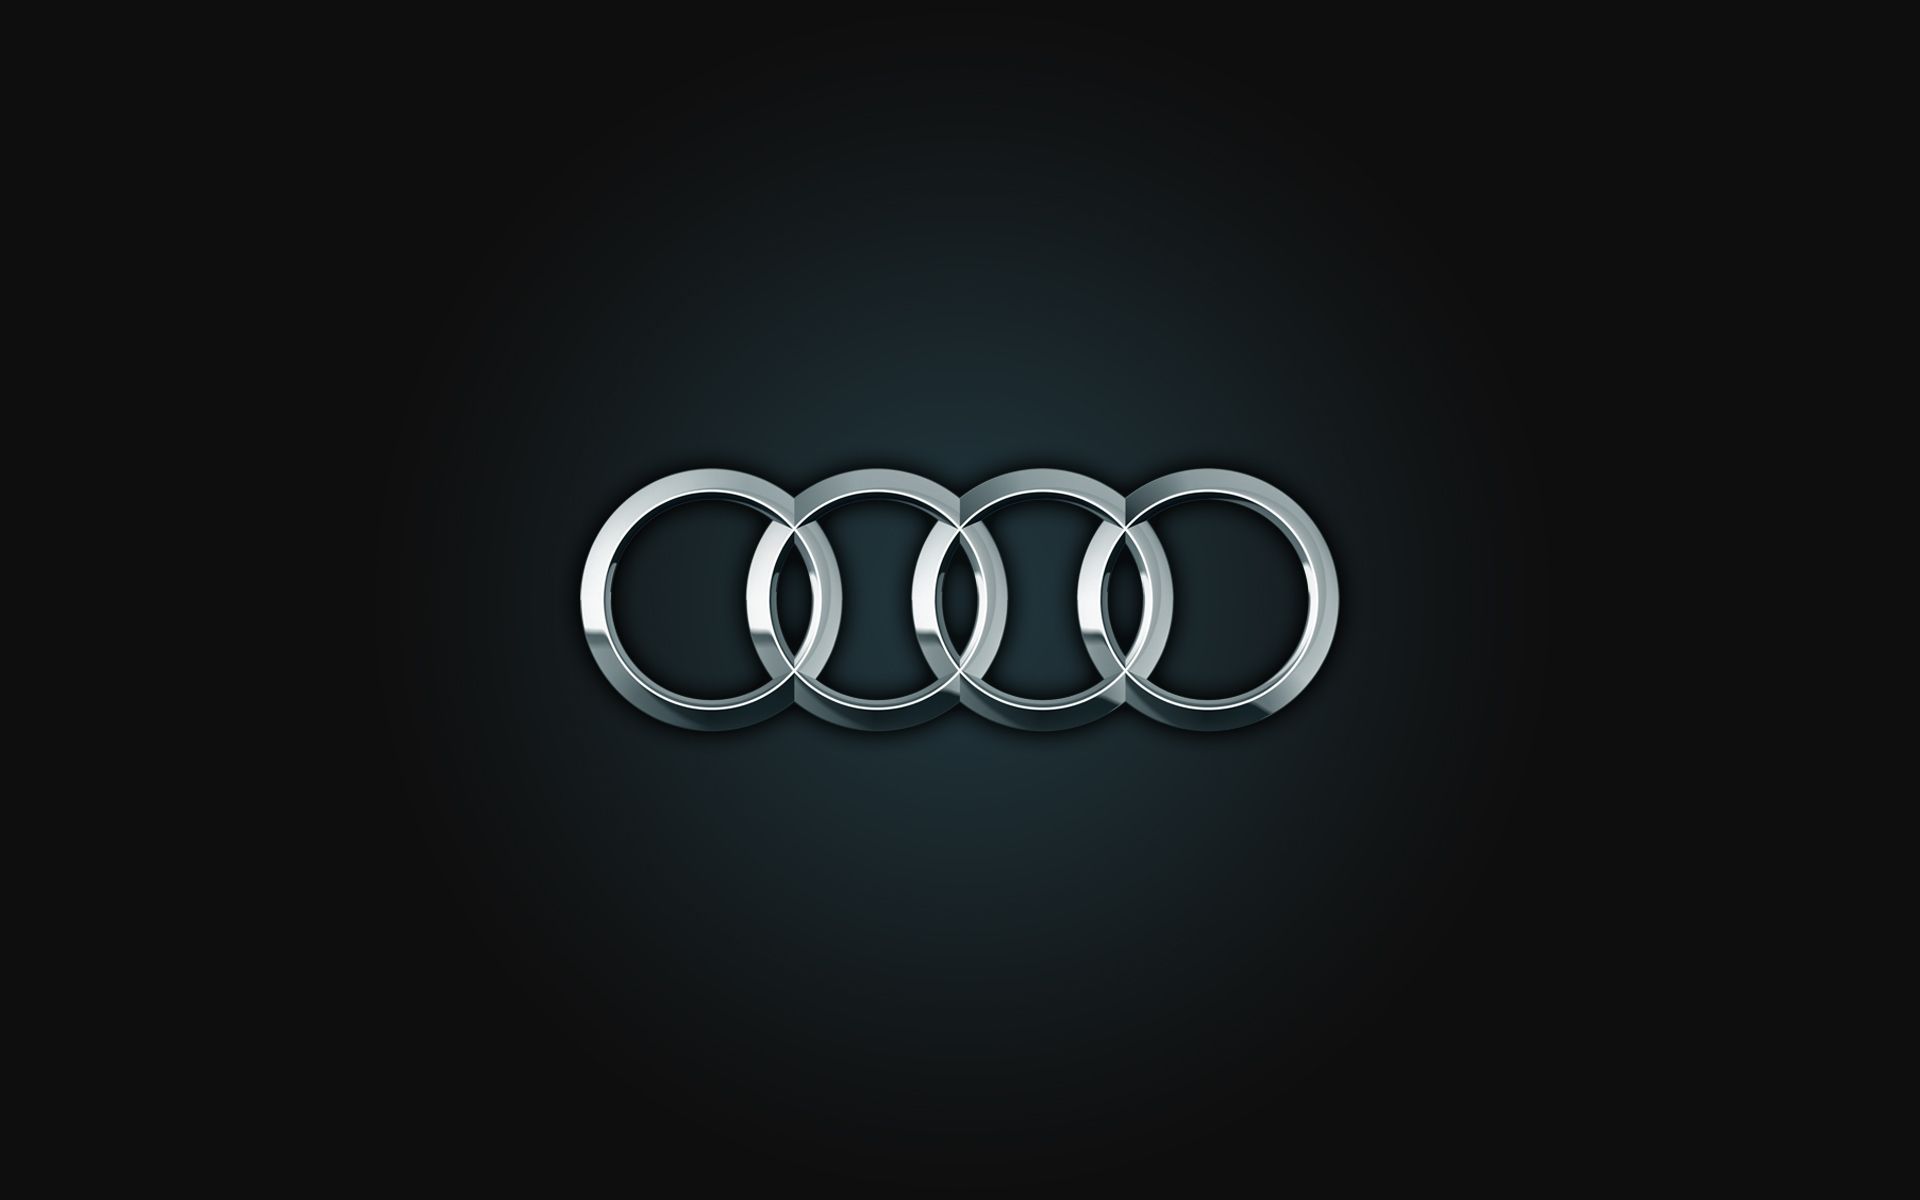 Audi HD Wallpaper This Rings